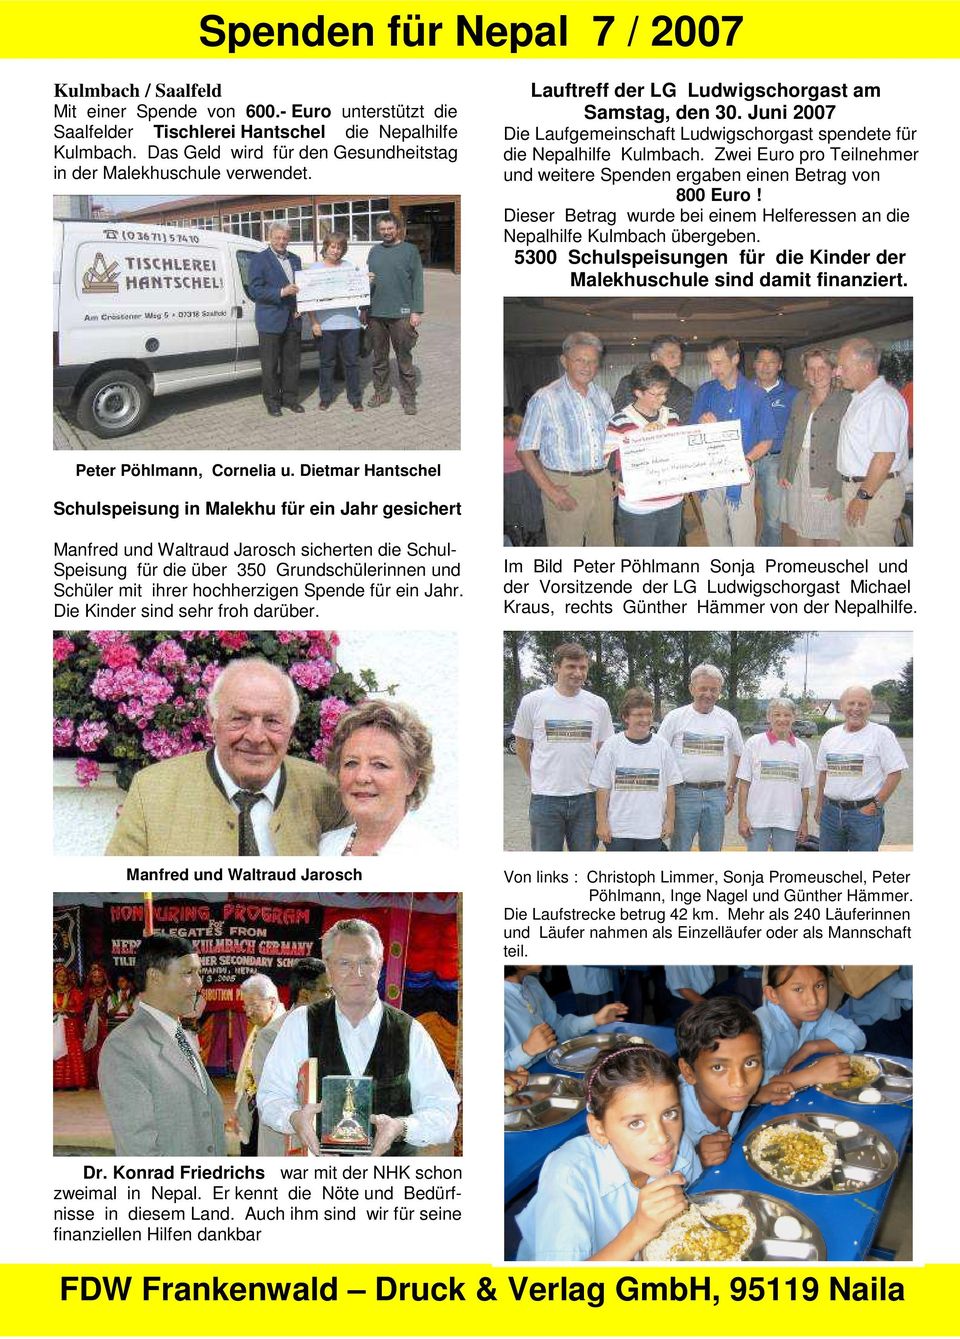 Juni 2007 Die Laufgemeinschaft Ludwigschorgast spendete für die Nepalhilfe Kulmbach. Zwei Euro pro Teilnehmer und weitere Spenden ergaben einen Betrag von 800 Euro!